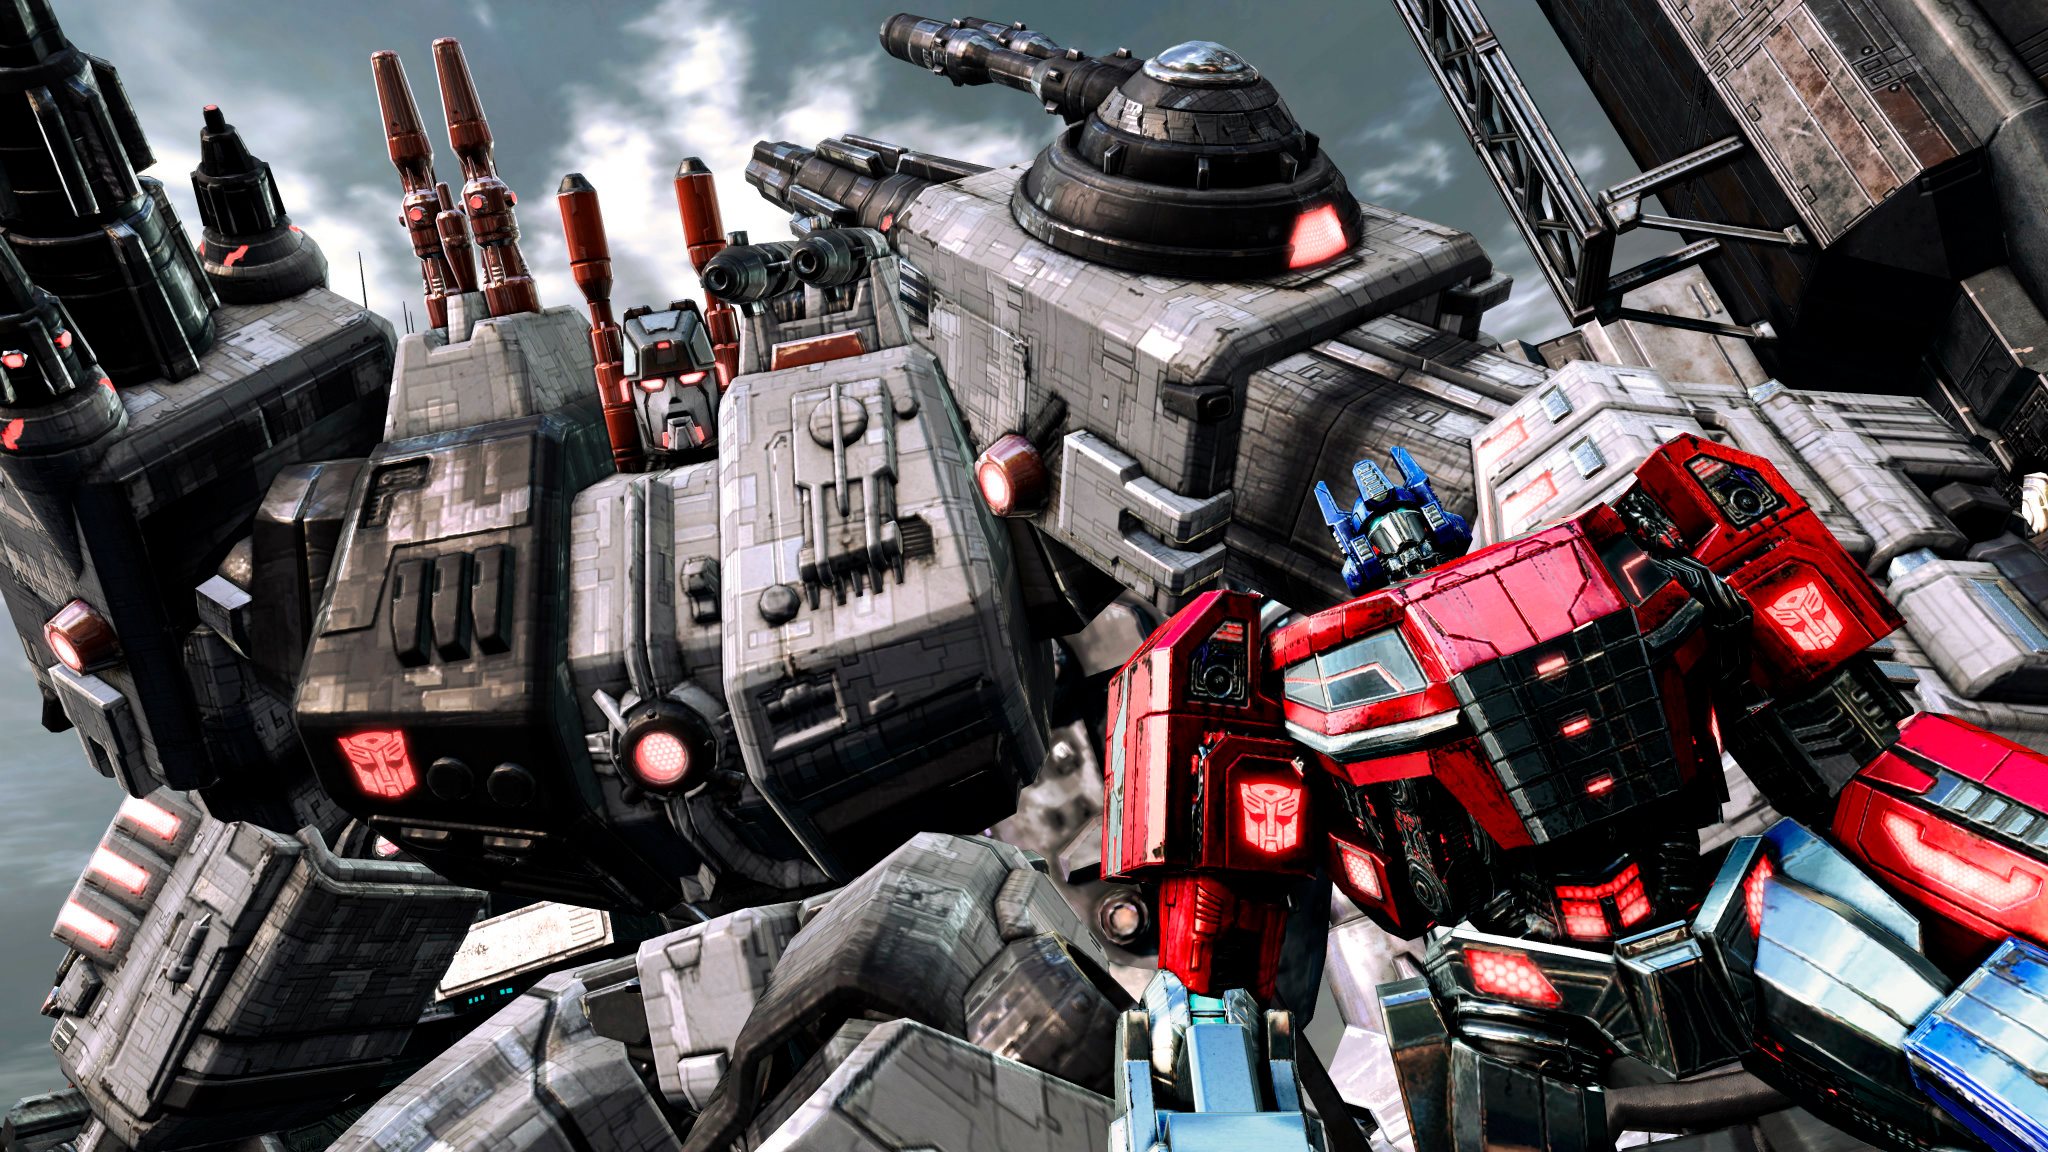 Descargar fondos de escritorio de Transformers: Fall Of Cybertron HD